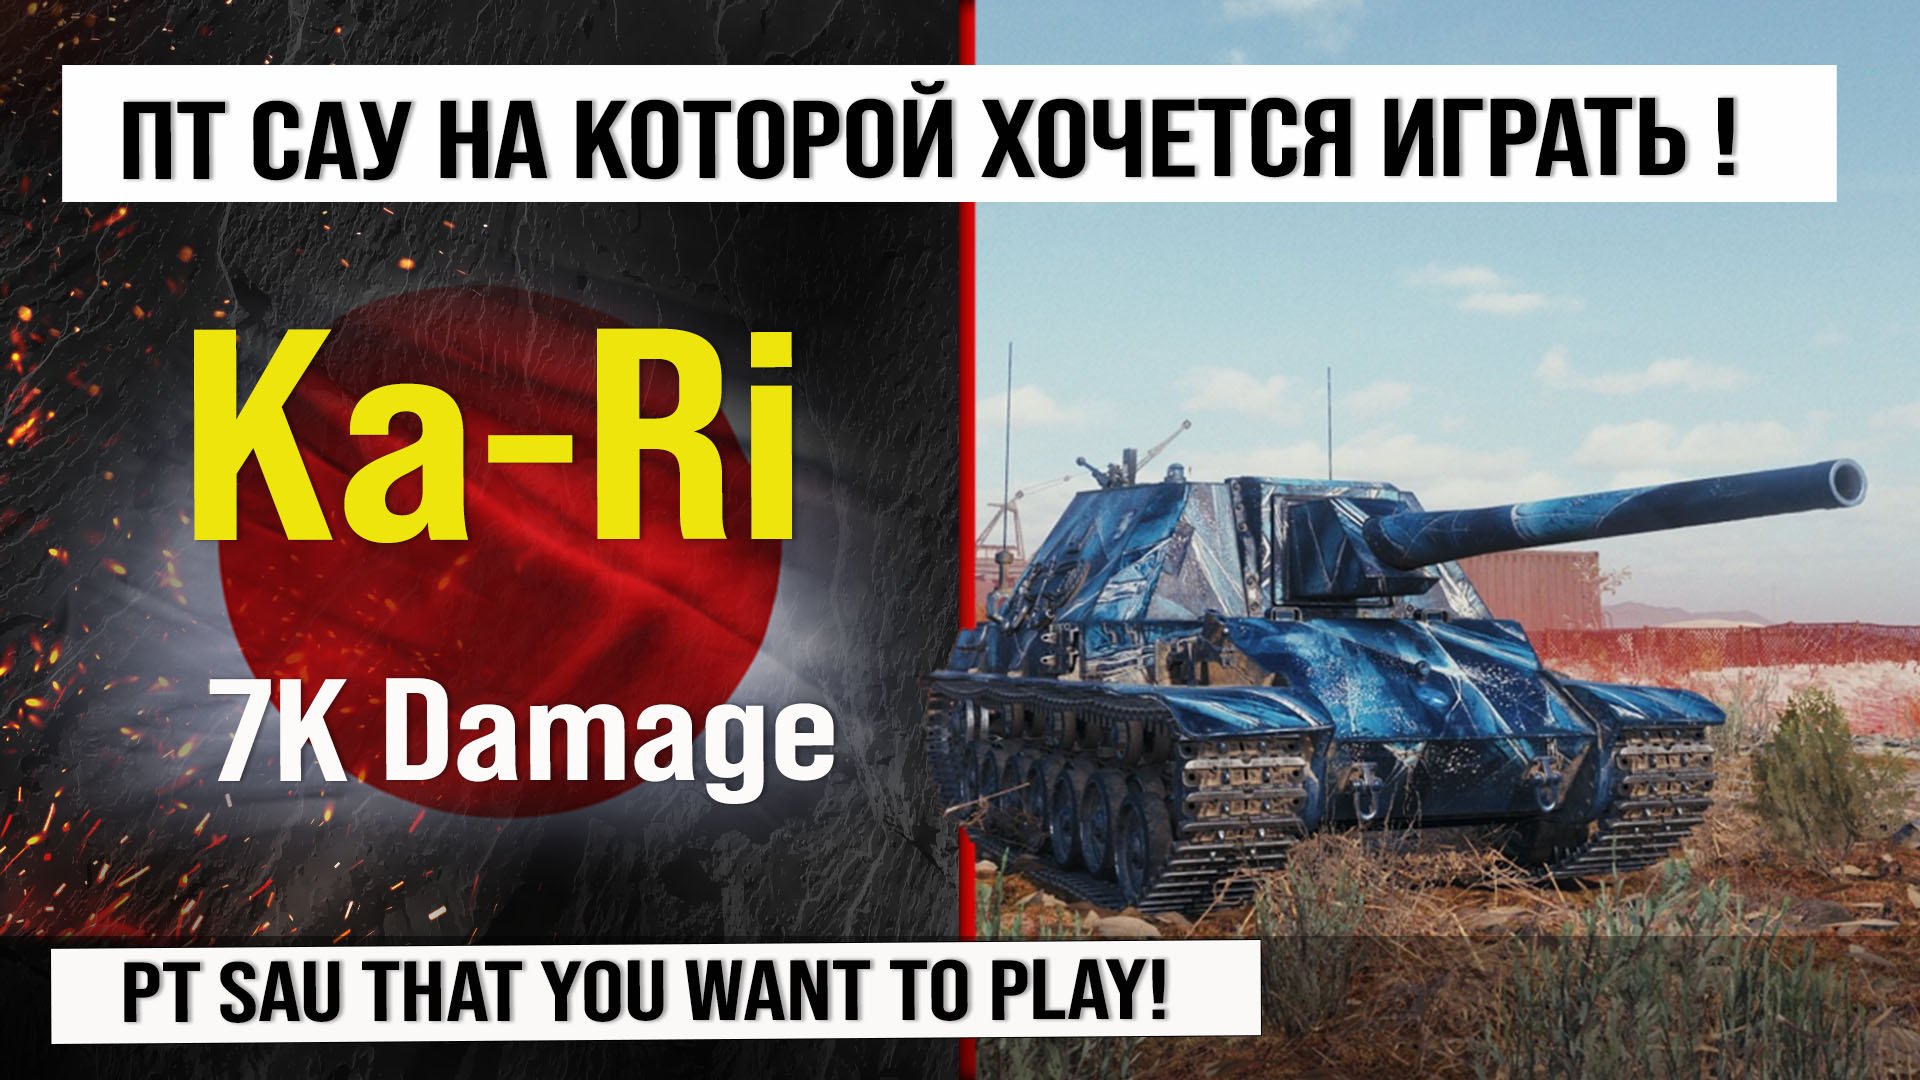 Ka-Ri лучший реплей недели, бой на 7k Damage | Обзор Type 5 Ka-Ri гайд по ПТ САУ